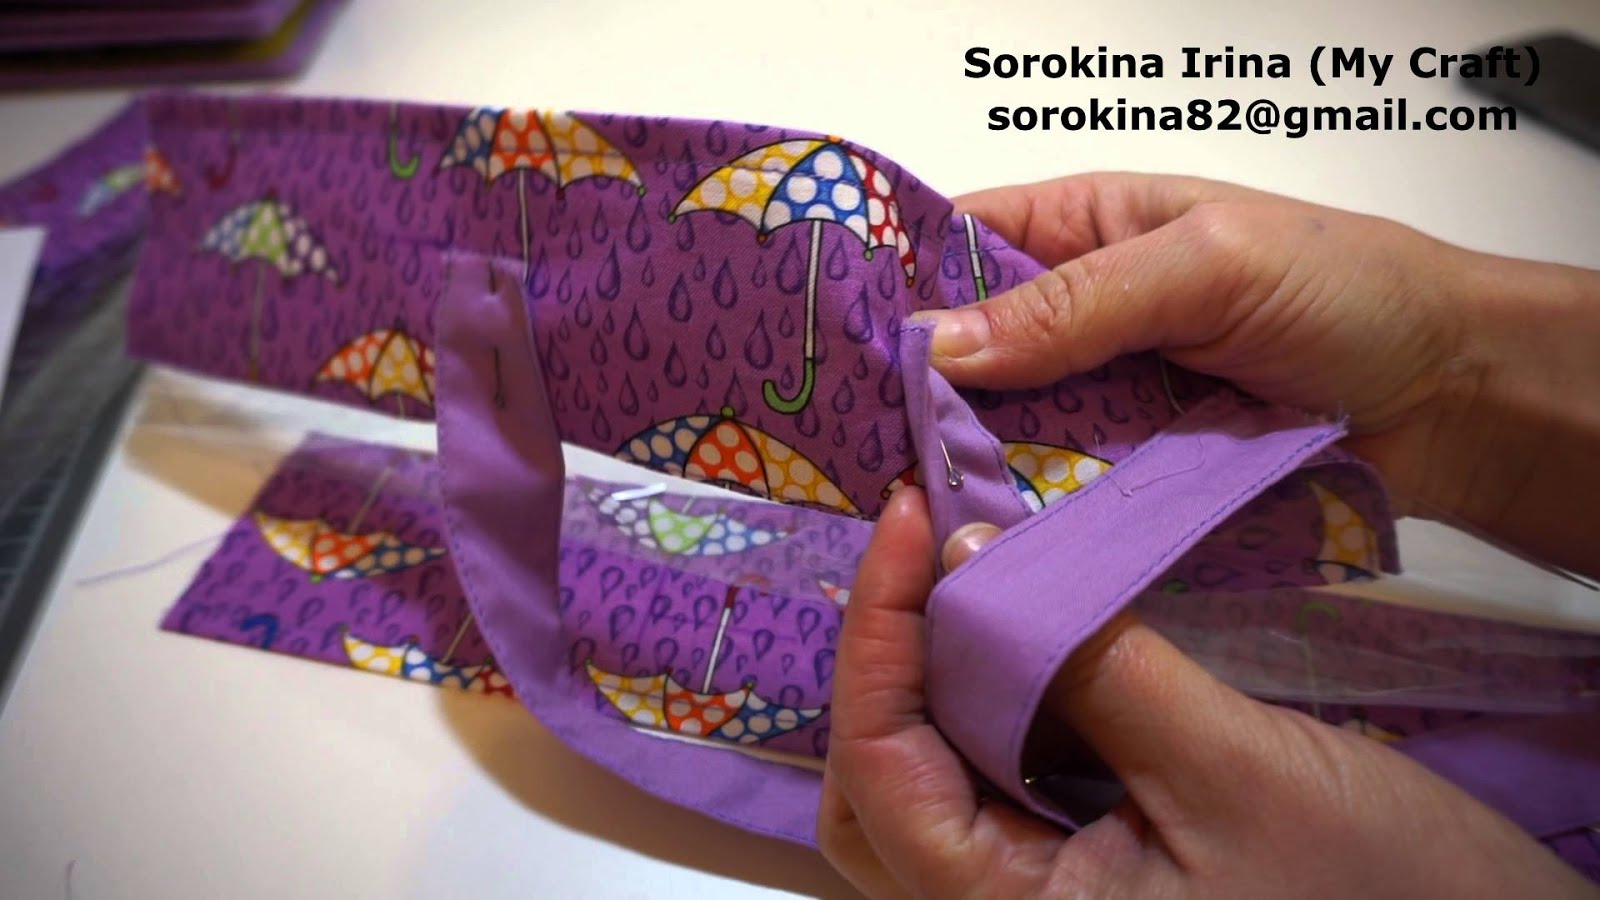 МК пошив сумочки для развивающей книжки от Ирины Сорокиной (My Craft)